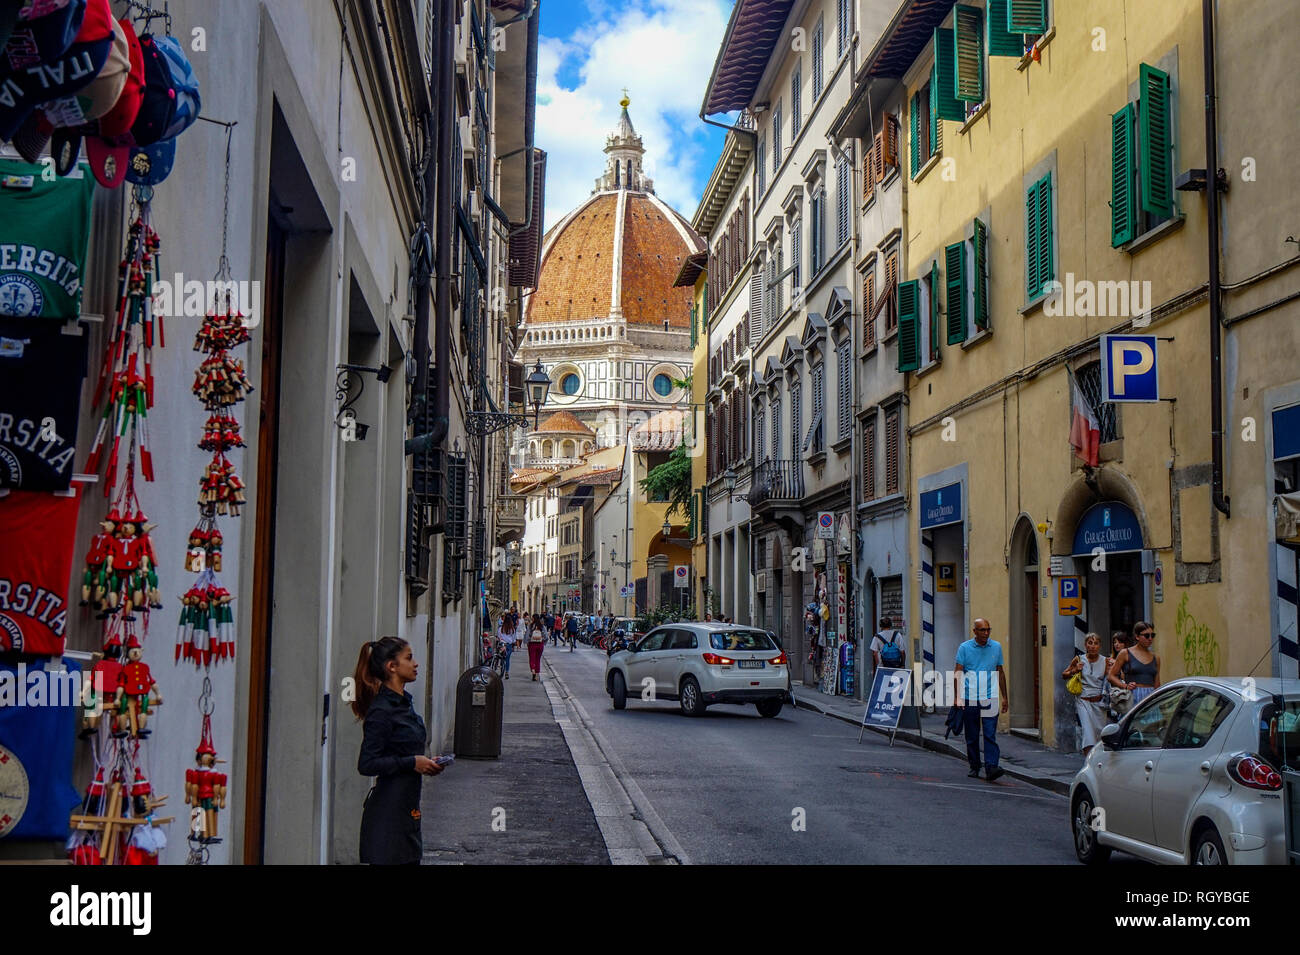 Florance, Toscane / ITALIE - 09.15.2017 : Rues de Florence avec l'Florance duomo à la fin Banque D'Images